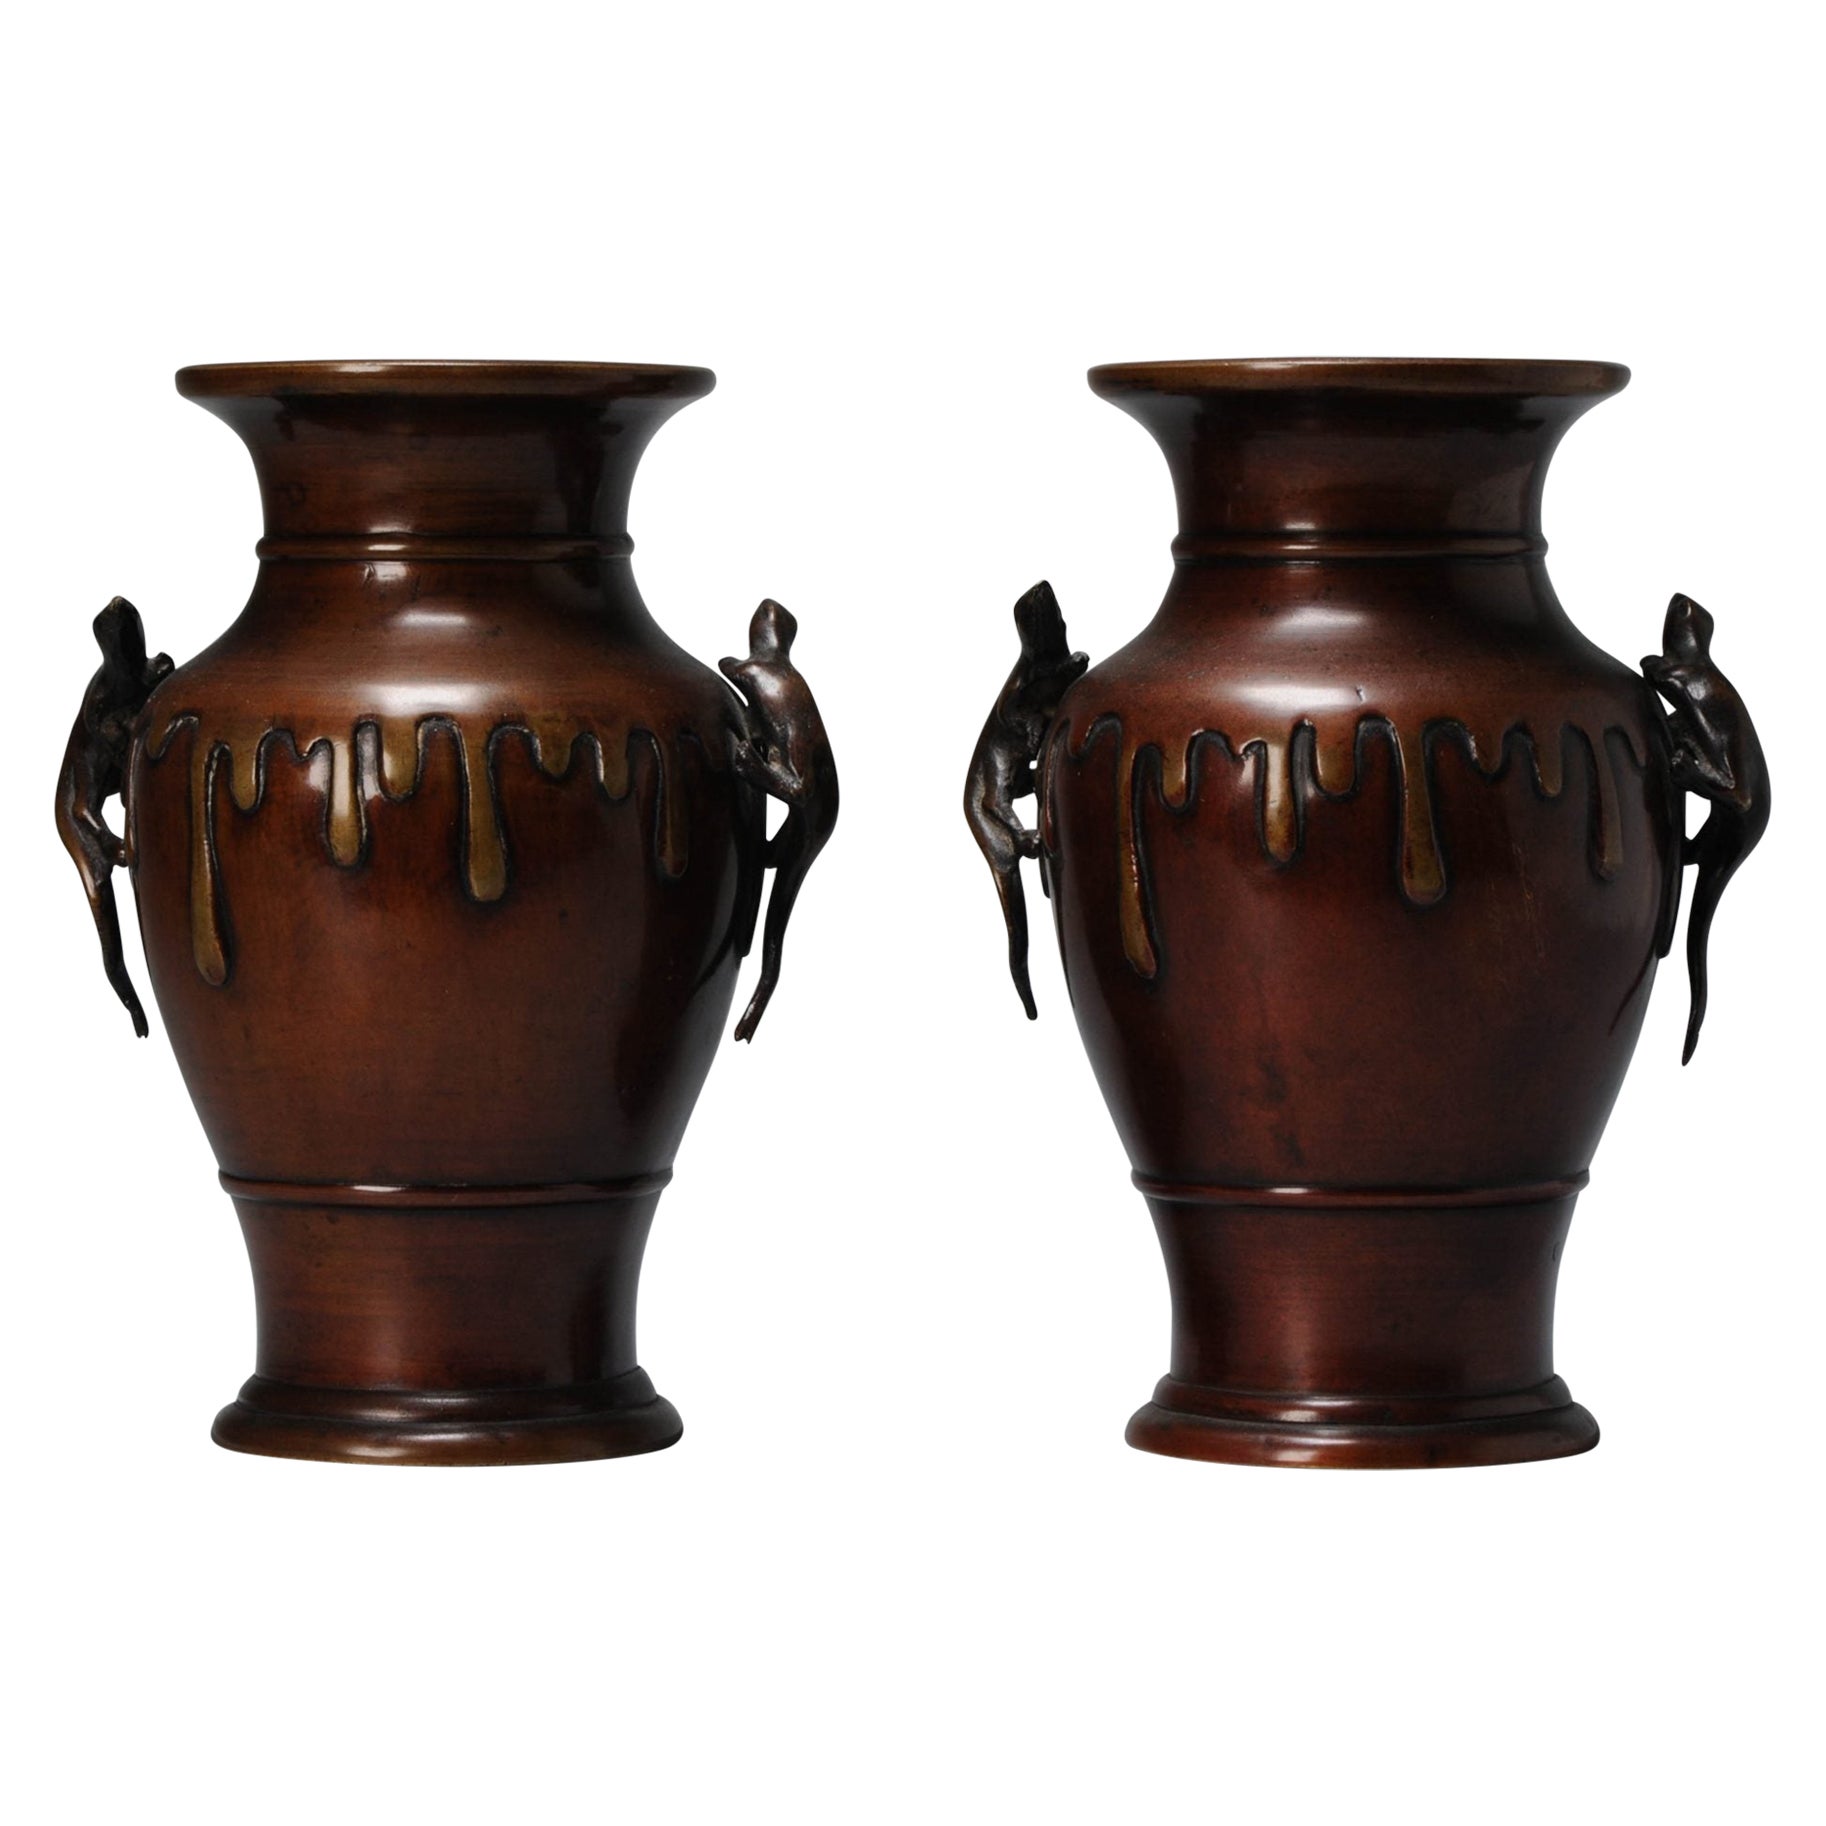 Impressive Antique Japanese Bronze Drip Design Vases Meiji Period, 19th Century